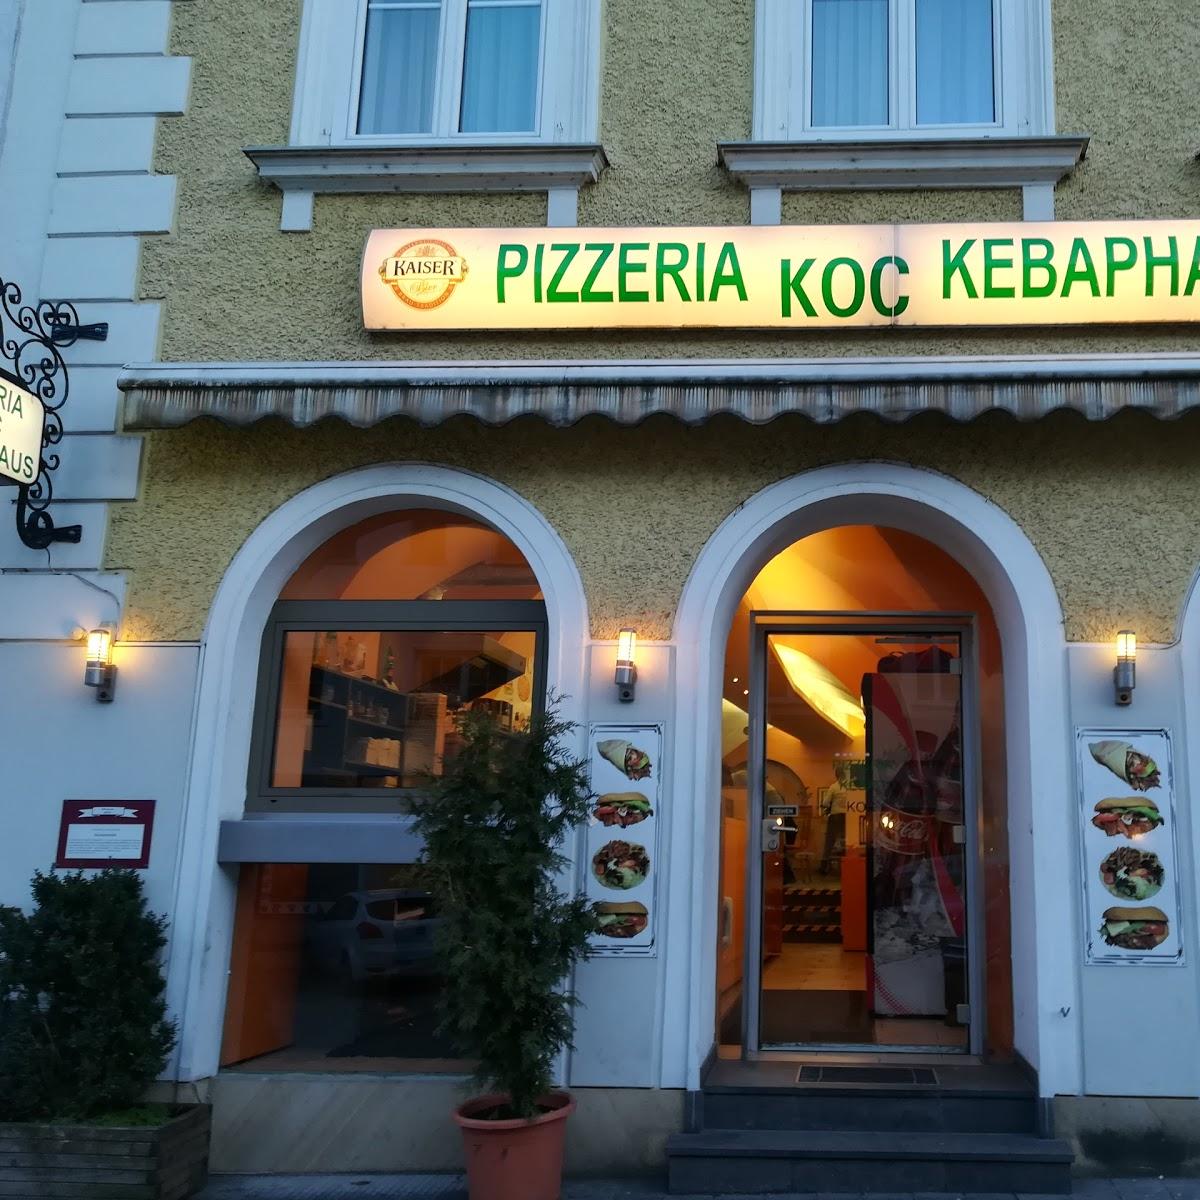 Restaurant "Koc - Pizza & Kebap" in Waidhofen an der Ybbs